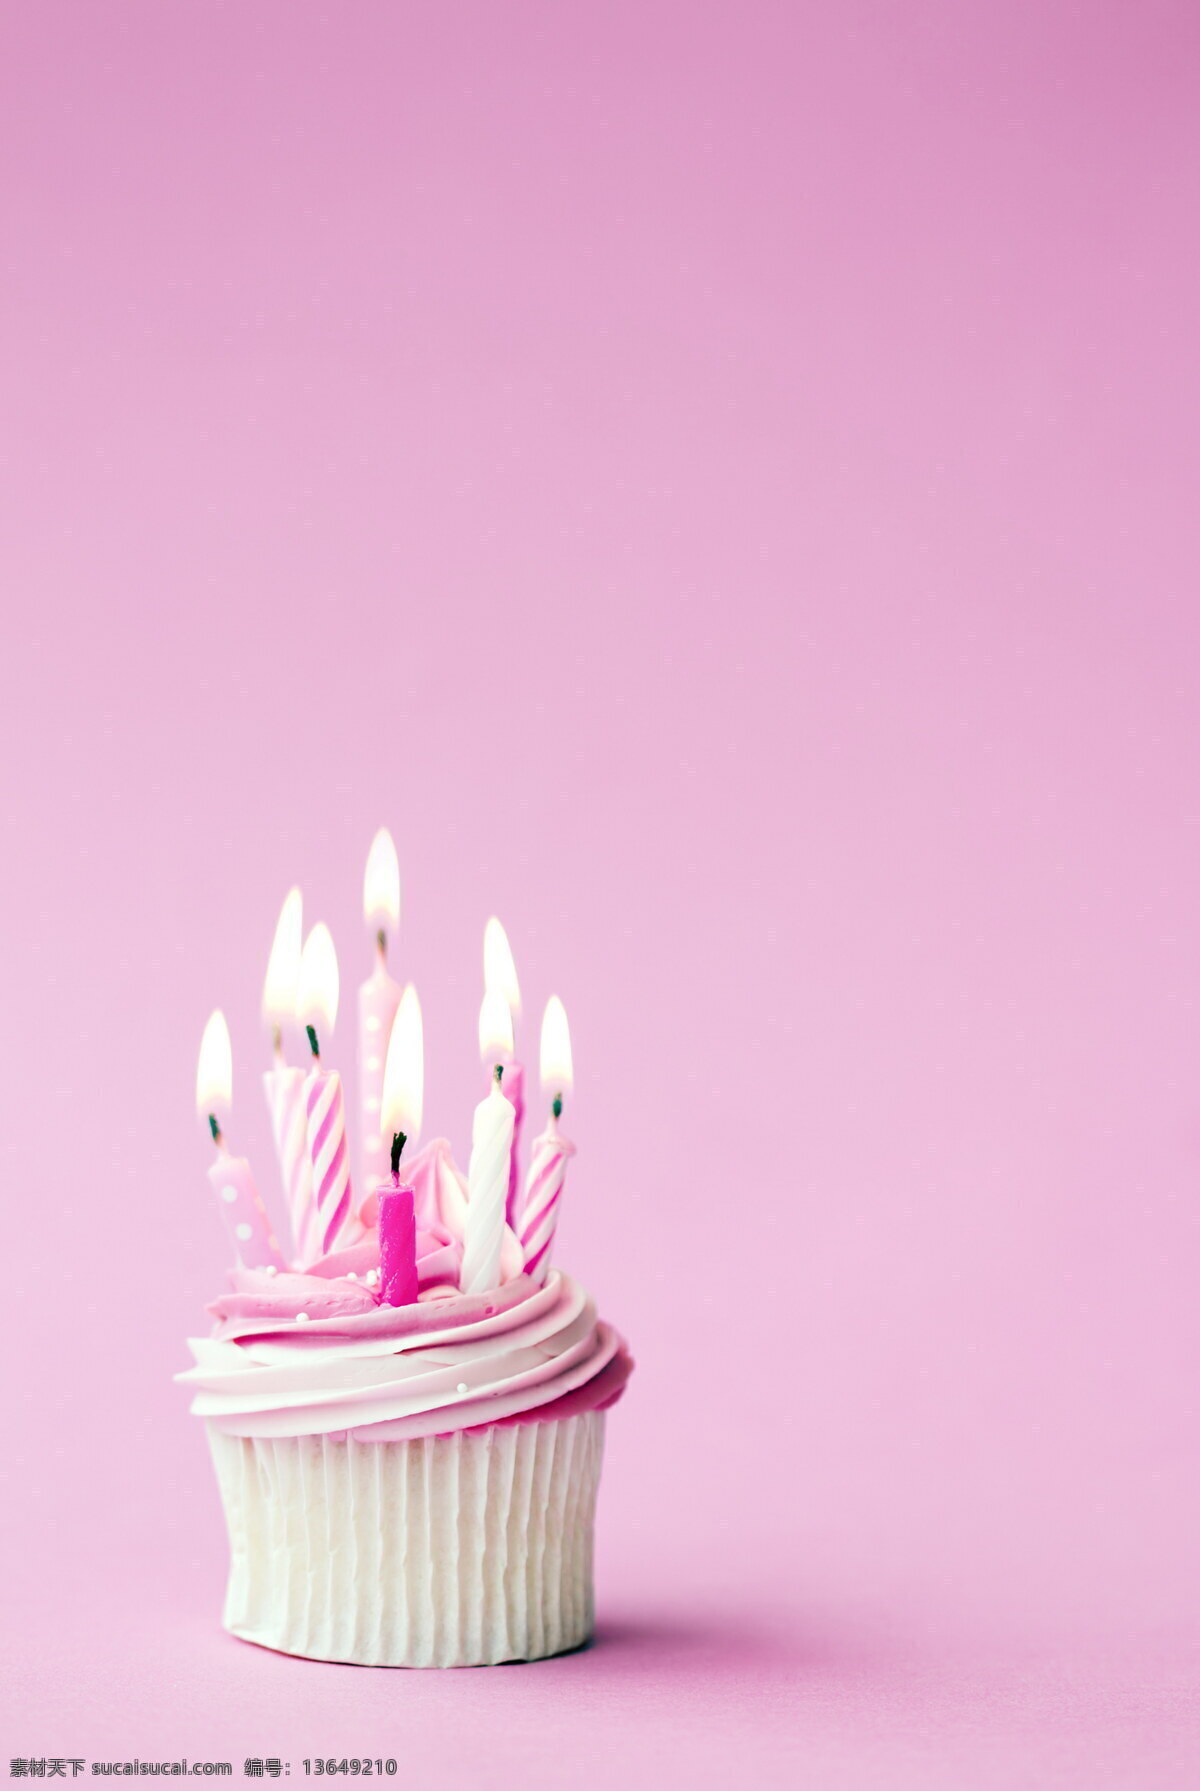 粉色 蜡烛 奶油 蛋糕 奶油蛋糕 生日蛋糕 蛋糕美食 糕点 生日蛋糕图片 餐饮美食